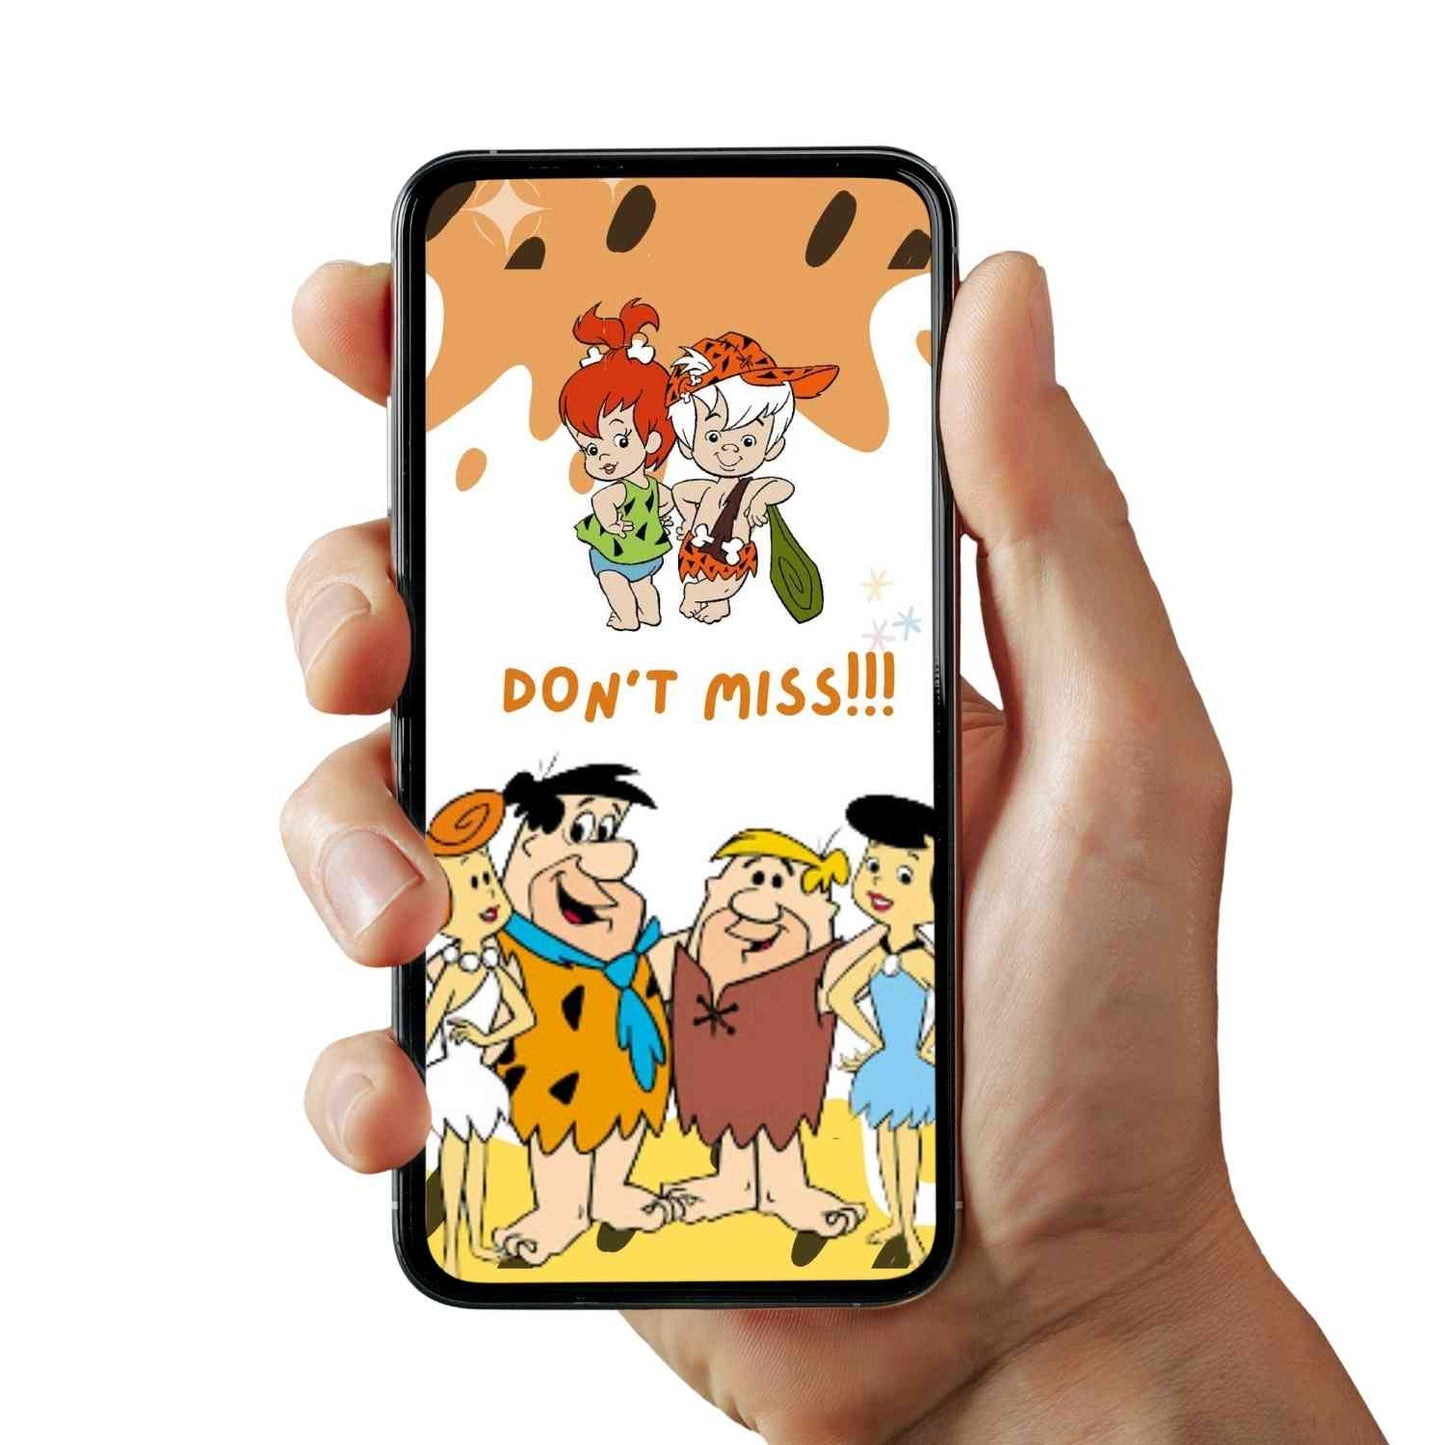 Flintstone Bam Bam Birthday Video Invitation | Personalized Flintstone Bam Bam Invitation